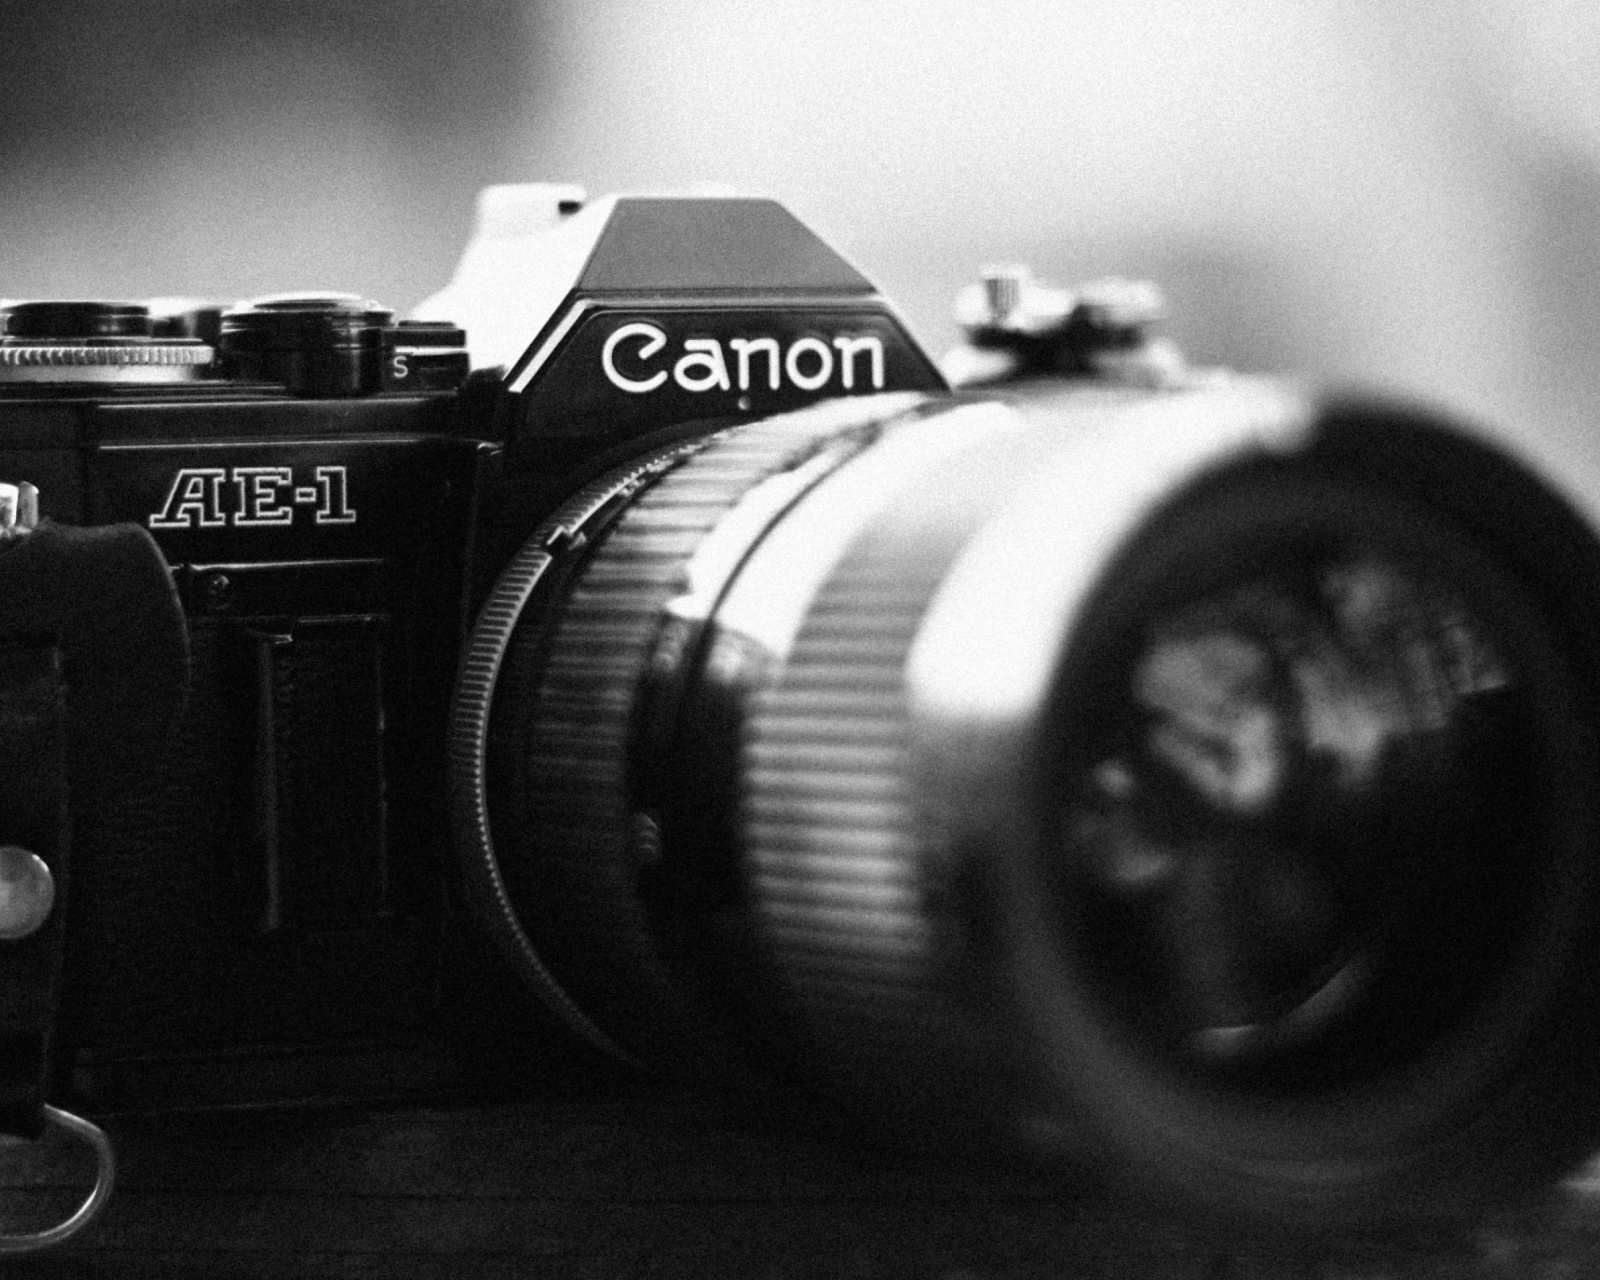 Ae-1 Canon Camera wallpaper 1600x1280